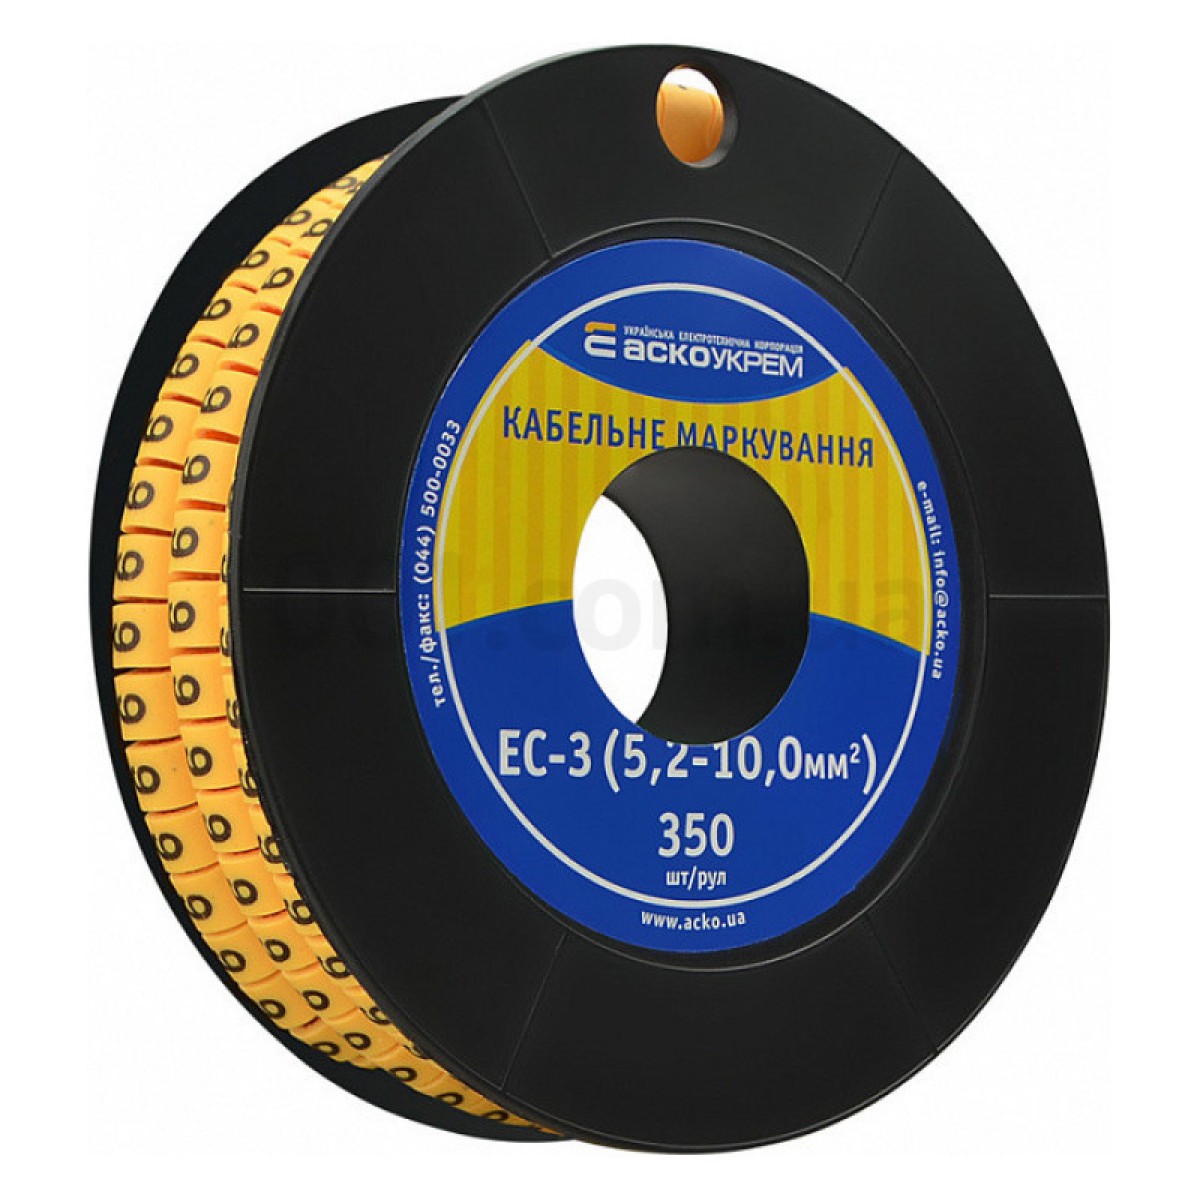 Маркировка EC-3 для кабеля 5,2-10,0 мм² символ «6» (рулон 250 шт.), АСКО-УКРЕМ 256_256.jpg